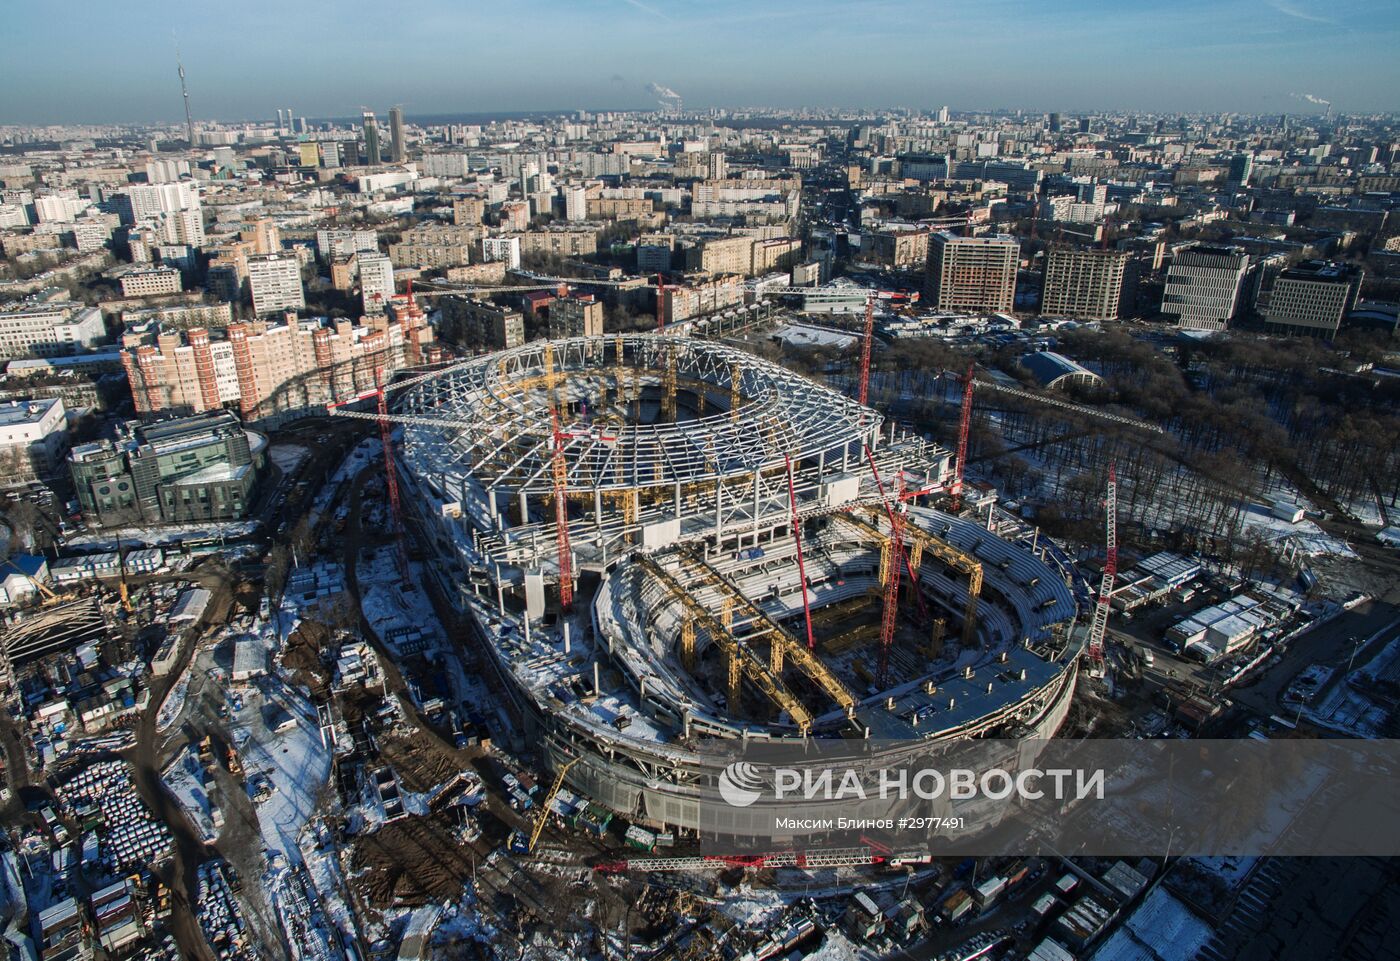 Строительство стадиона "Динамо" в Москве